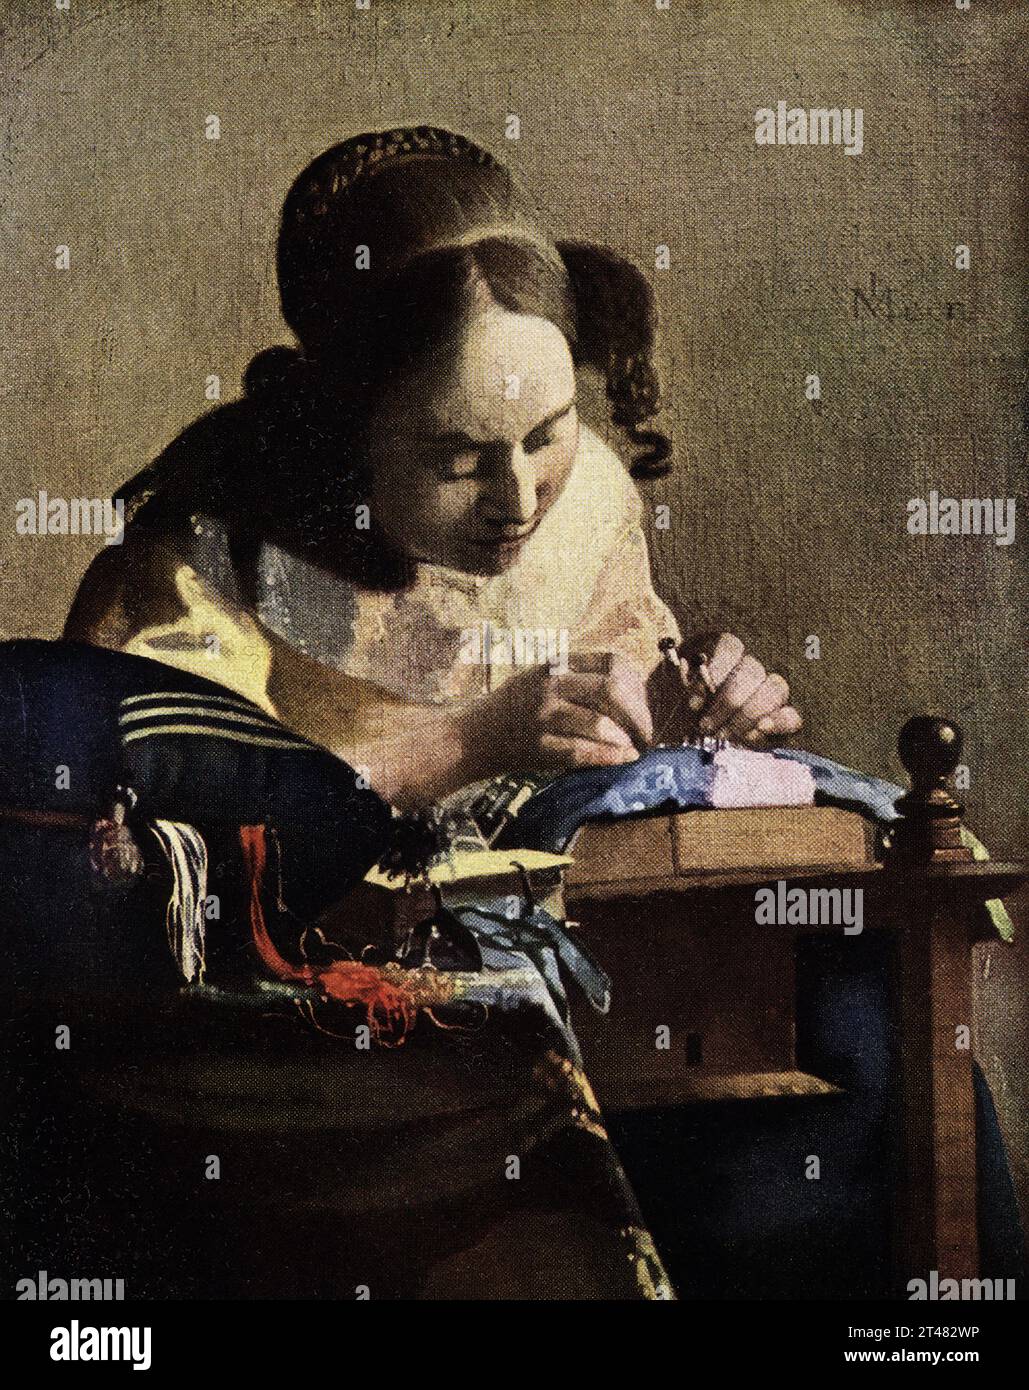 La légende de 1916 se lit comme suit : « Vermeer de Delft 1632-1675 Dutch School The Lace Maker la Dentelliere in Louvre J v Meer – les trois premières lettres sont entrelacées. Peint à l'huile sur toile. 9,5 sur la place Johannes Vermeer était un peintre néerlandais de la période baroque qui s'est spécialisé dans les scènes intérieures de la vie de la classe moyenne. Il est considéré comme l'un des plus grands peintres de l'âge d'or néerlandais avec Rembrandt Banque D'Images